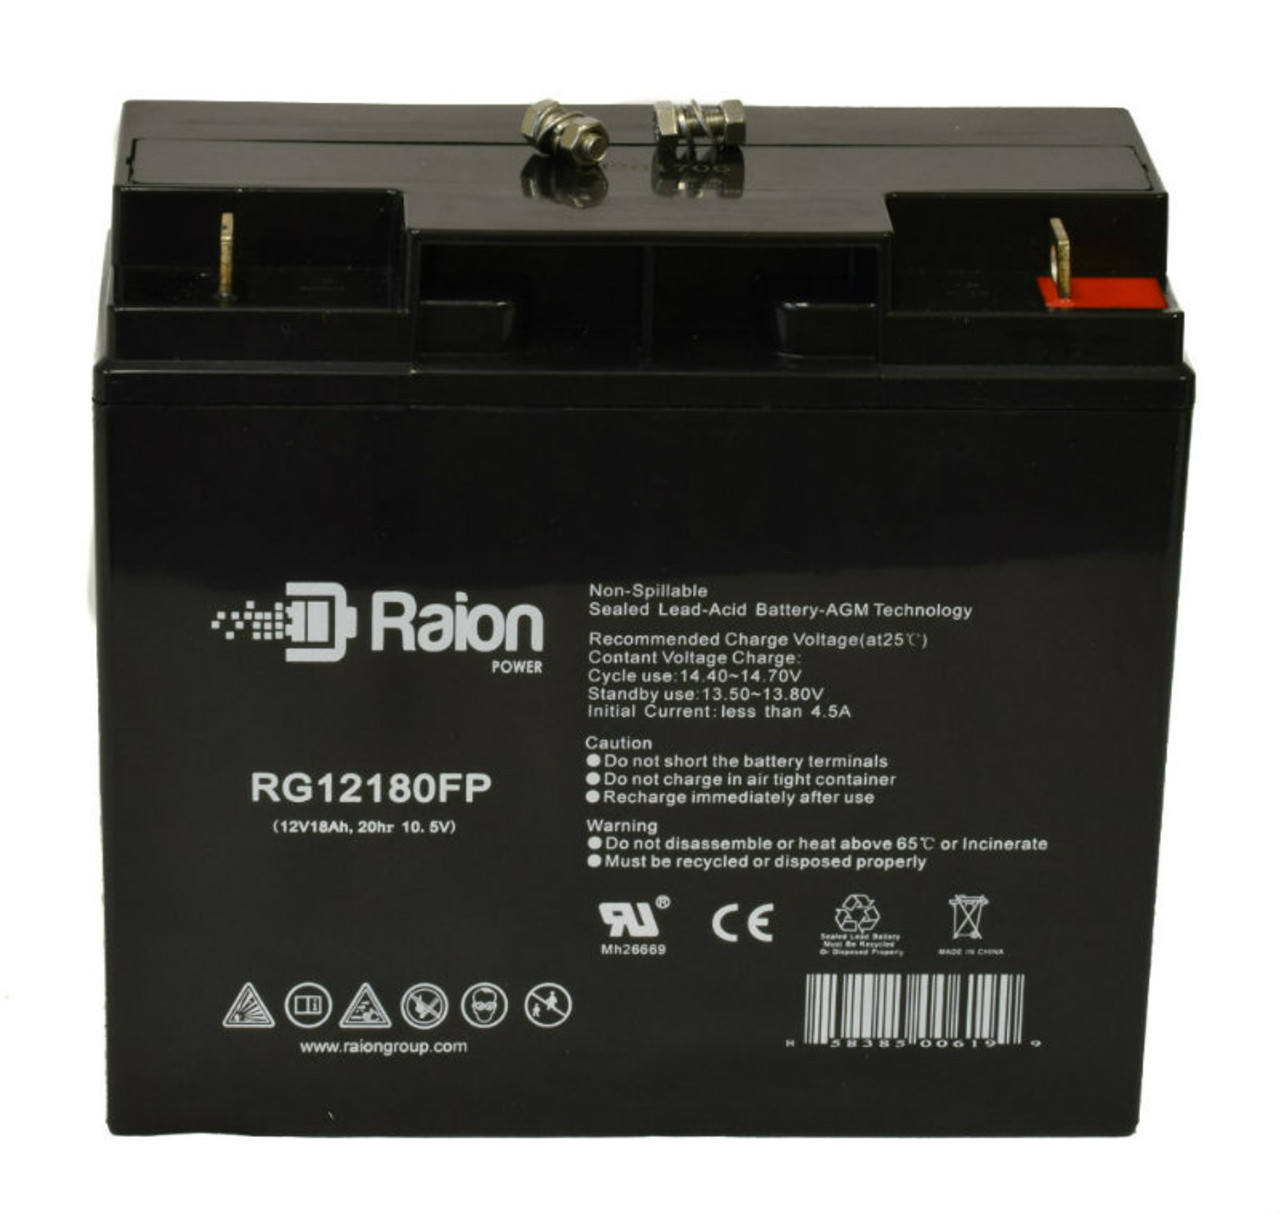 Raion Power RG12180FP 12V 18Ah Lead Acid Battery for Simplex 92680